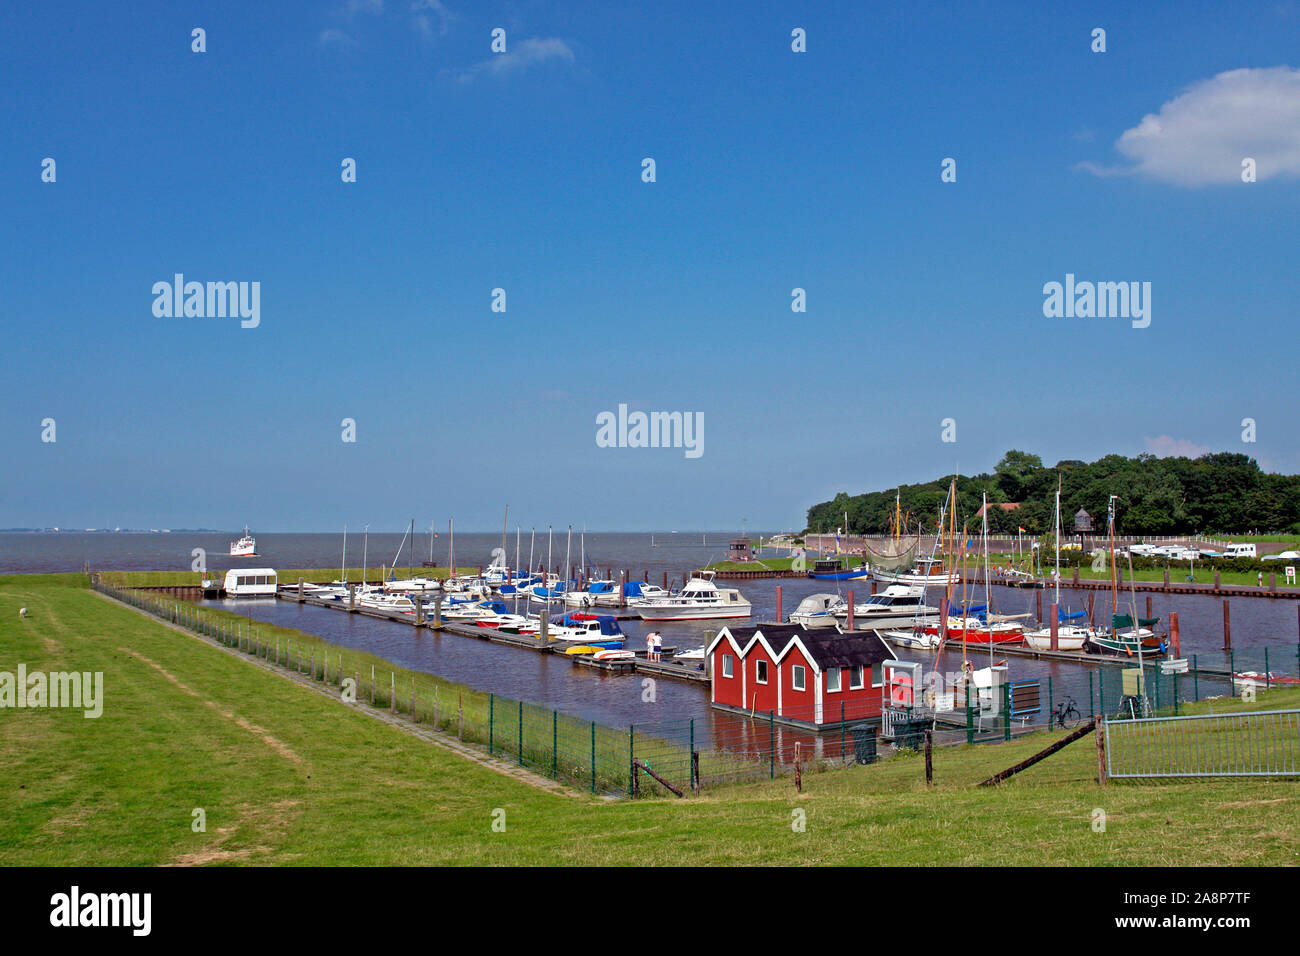 Hafen von Dangast mit Schiff Etta von Dangast, Nordseebad Dangast, Niedersachsen, Jadebusen, Friesland, Stock Photo